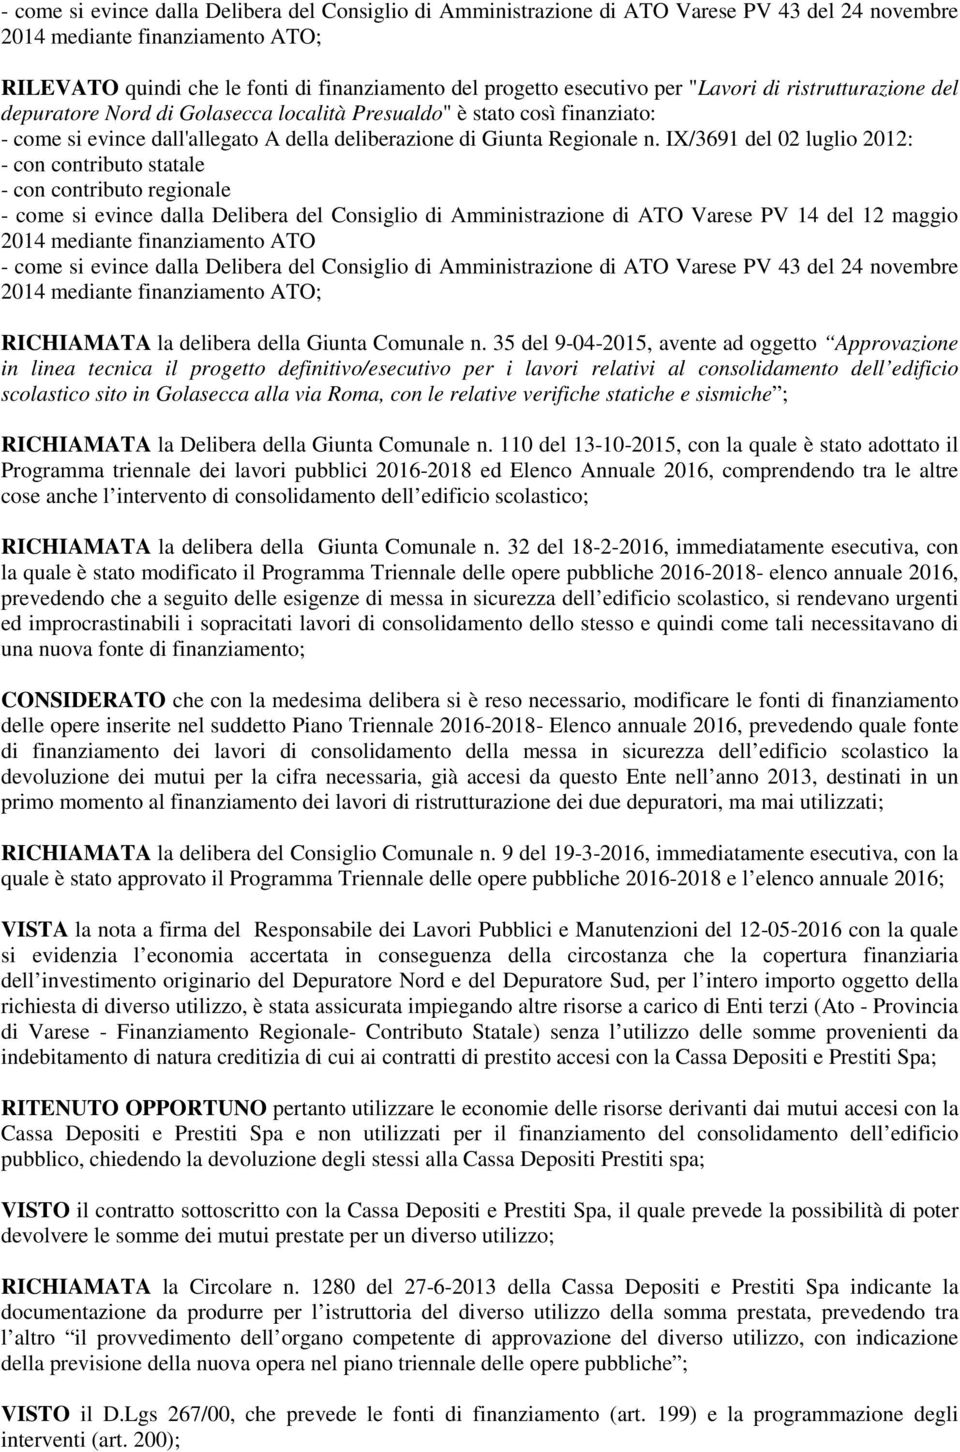 IX/3691 del 02 luglio 2012: - con contributo statale - con contributo regionale - come si evince dalla Delibera del Consiglio di Amministrazione di ATO Varese PV 14 del 12 maggio 2014 mediante